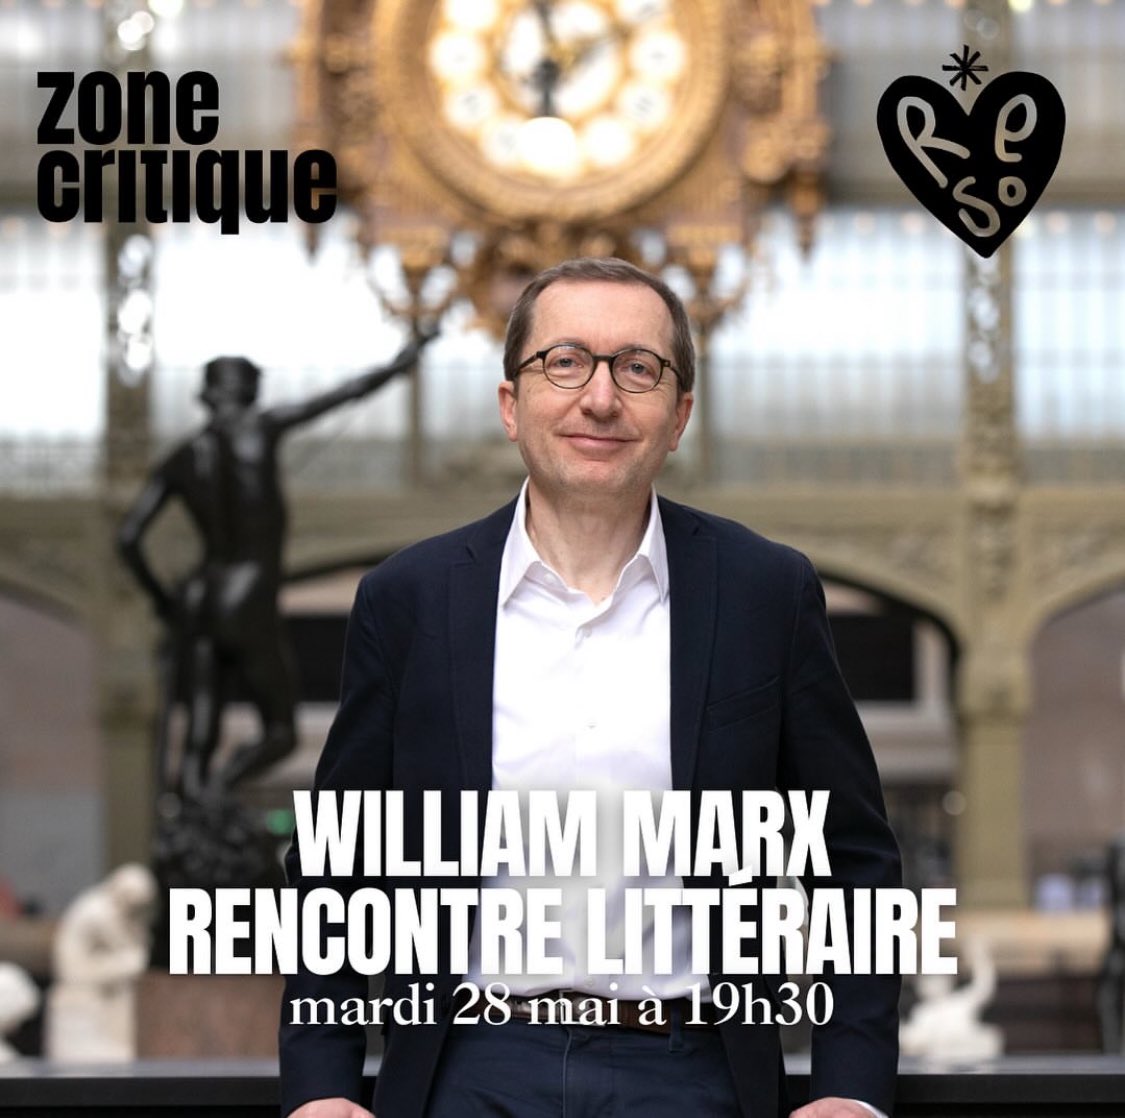 Et voici déjà la prochaine rencontre parisienne, le mardi 28 mai à 19h30 avec @Zone_Critique ! Toutes infos et inscription ici : zone-critique.com/evenements/ren…